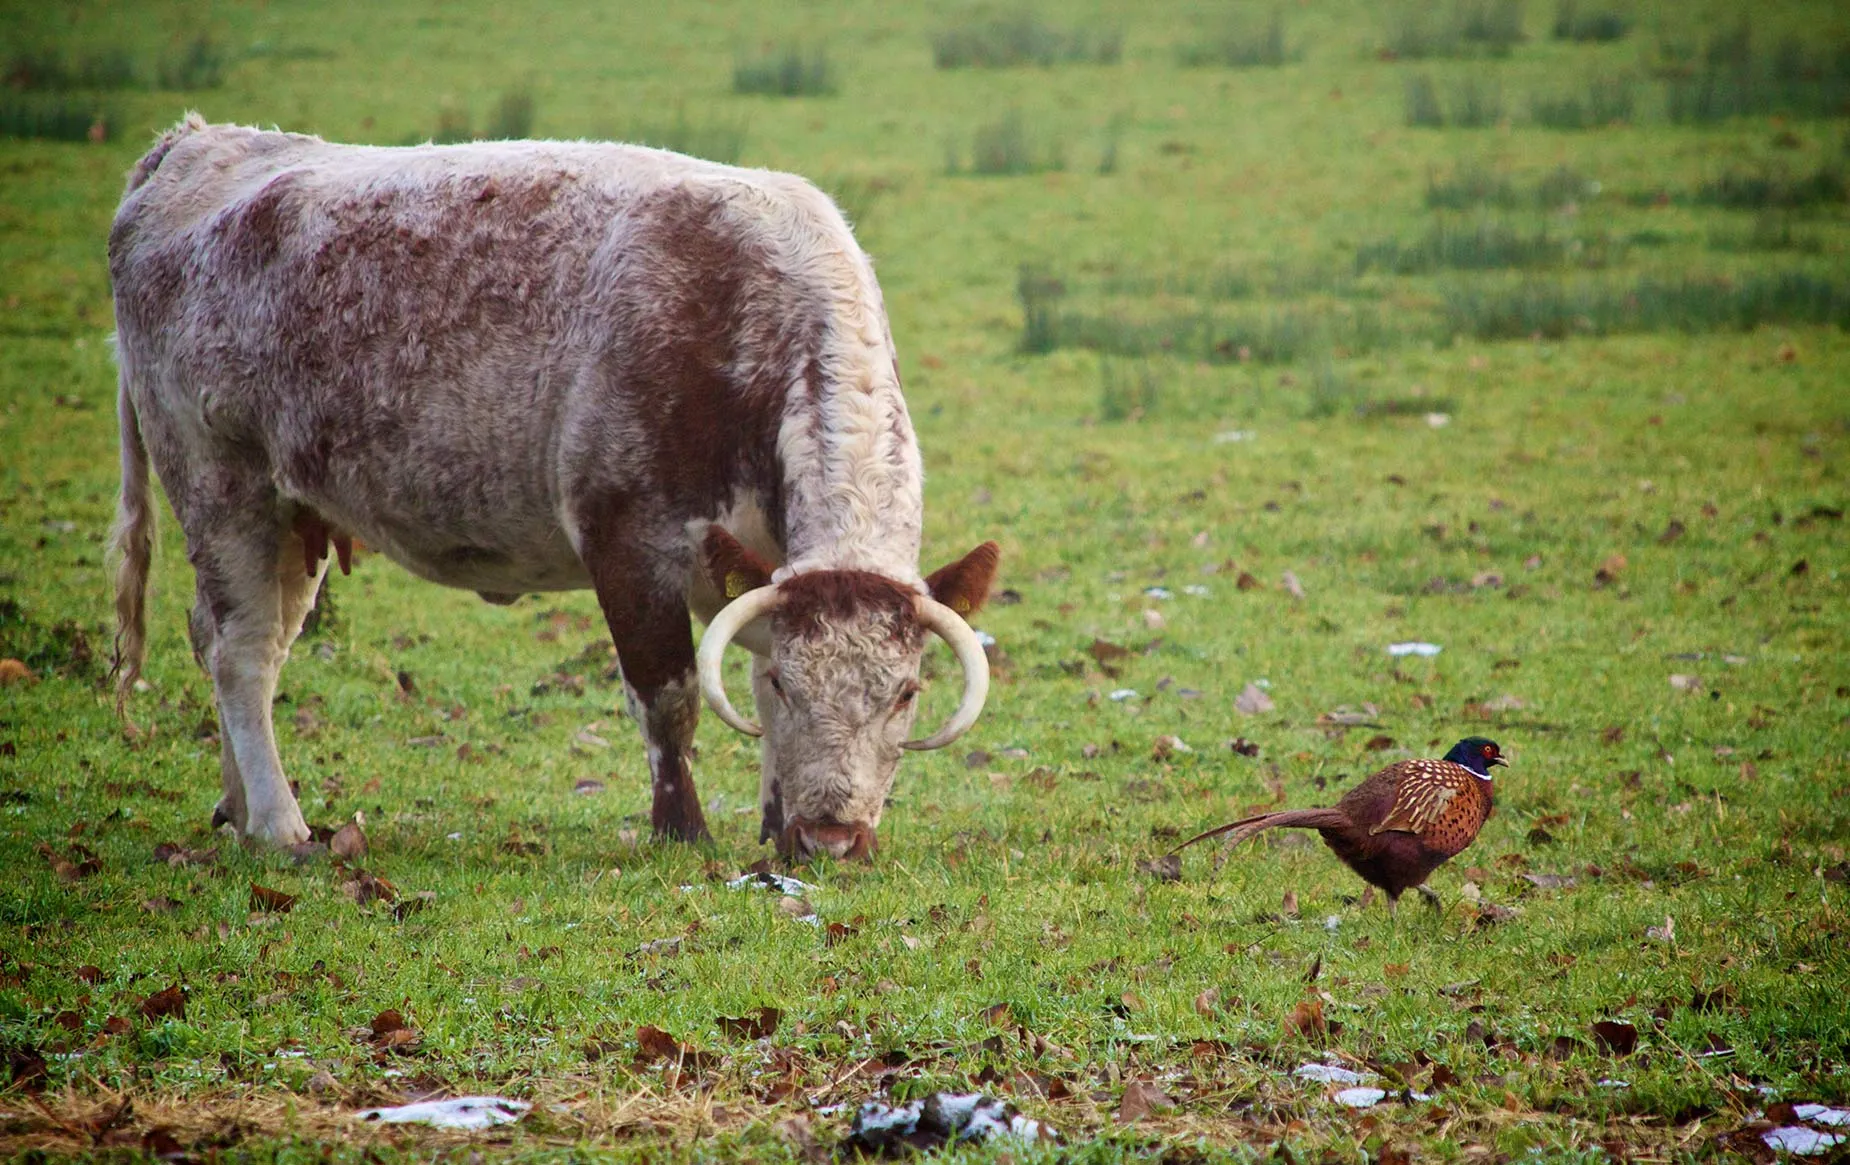 Longhorn cattle grazing in the meadow